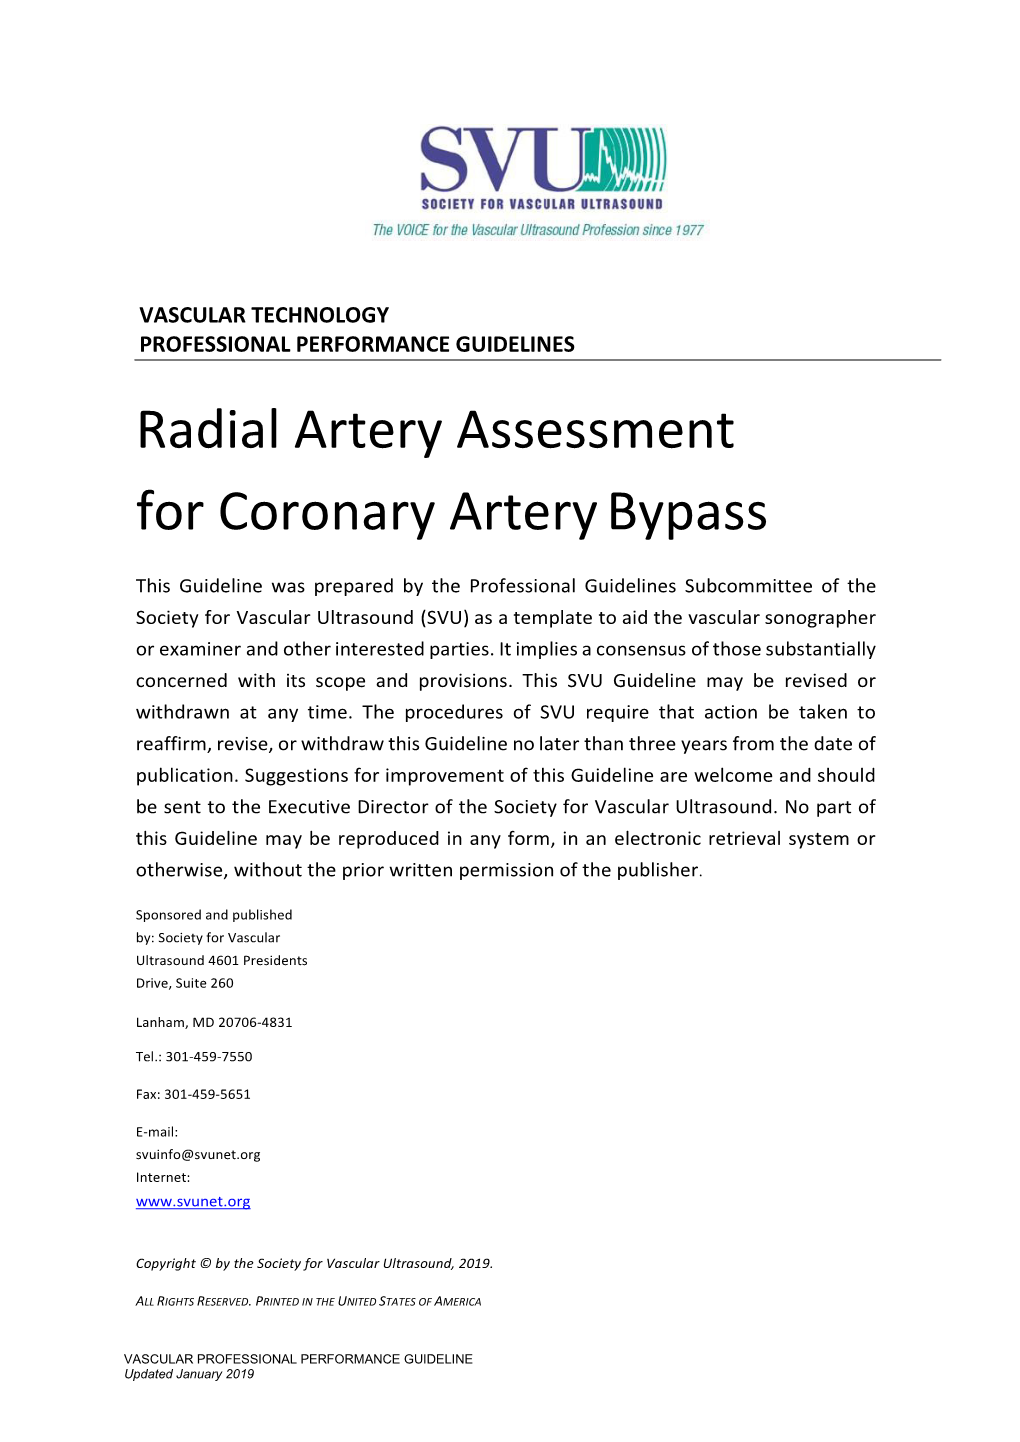 Radial Artery Assessment for Coronary Artery Bypass